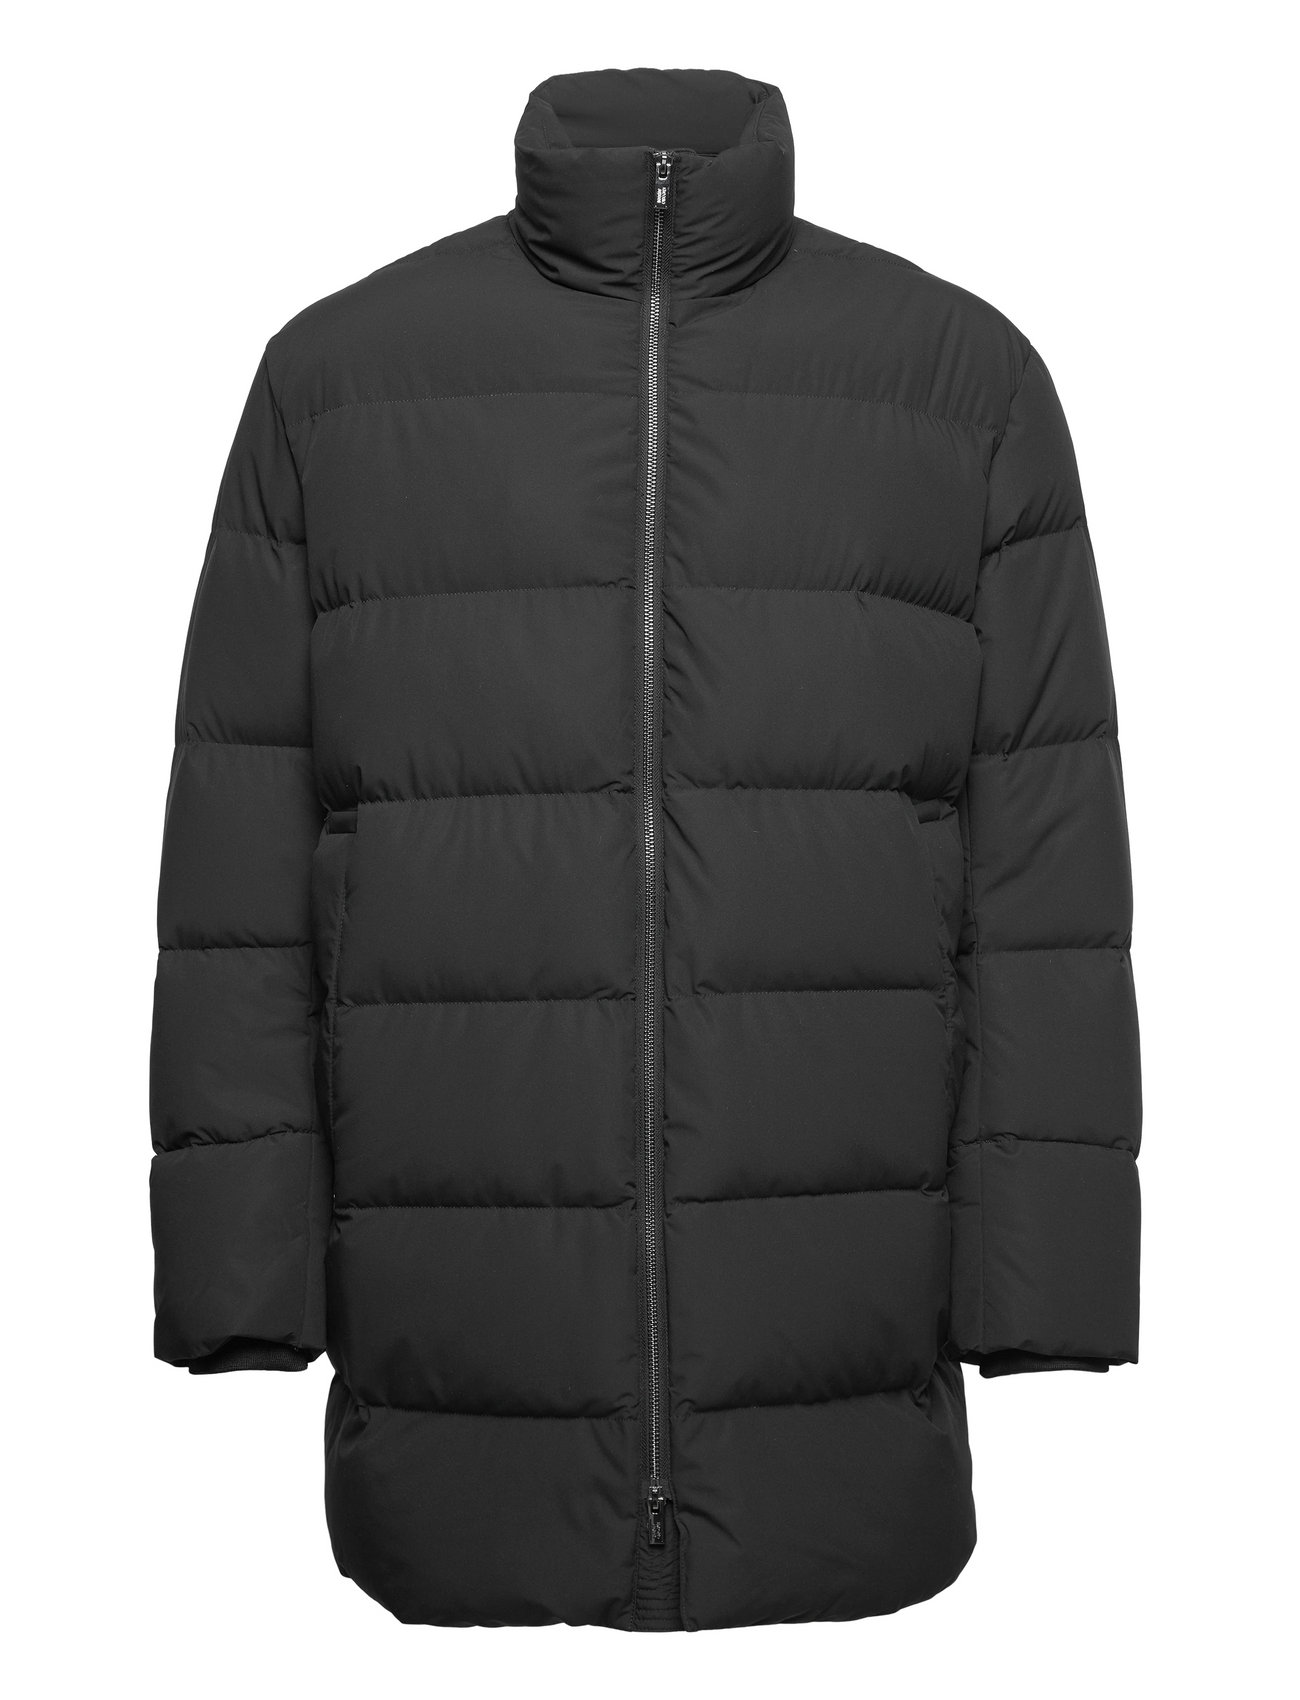 fabrik henvise Bred vifte Emporio Armani Duvet Jacket - 2015 kr. Køb Forede jakker fra Emporio Armani  online på Boozt.com. Hurtig levering & nem retur